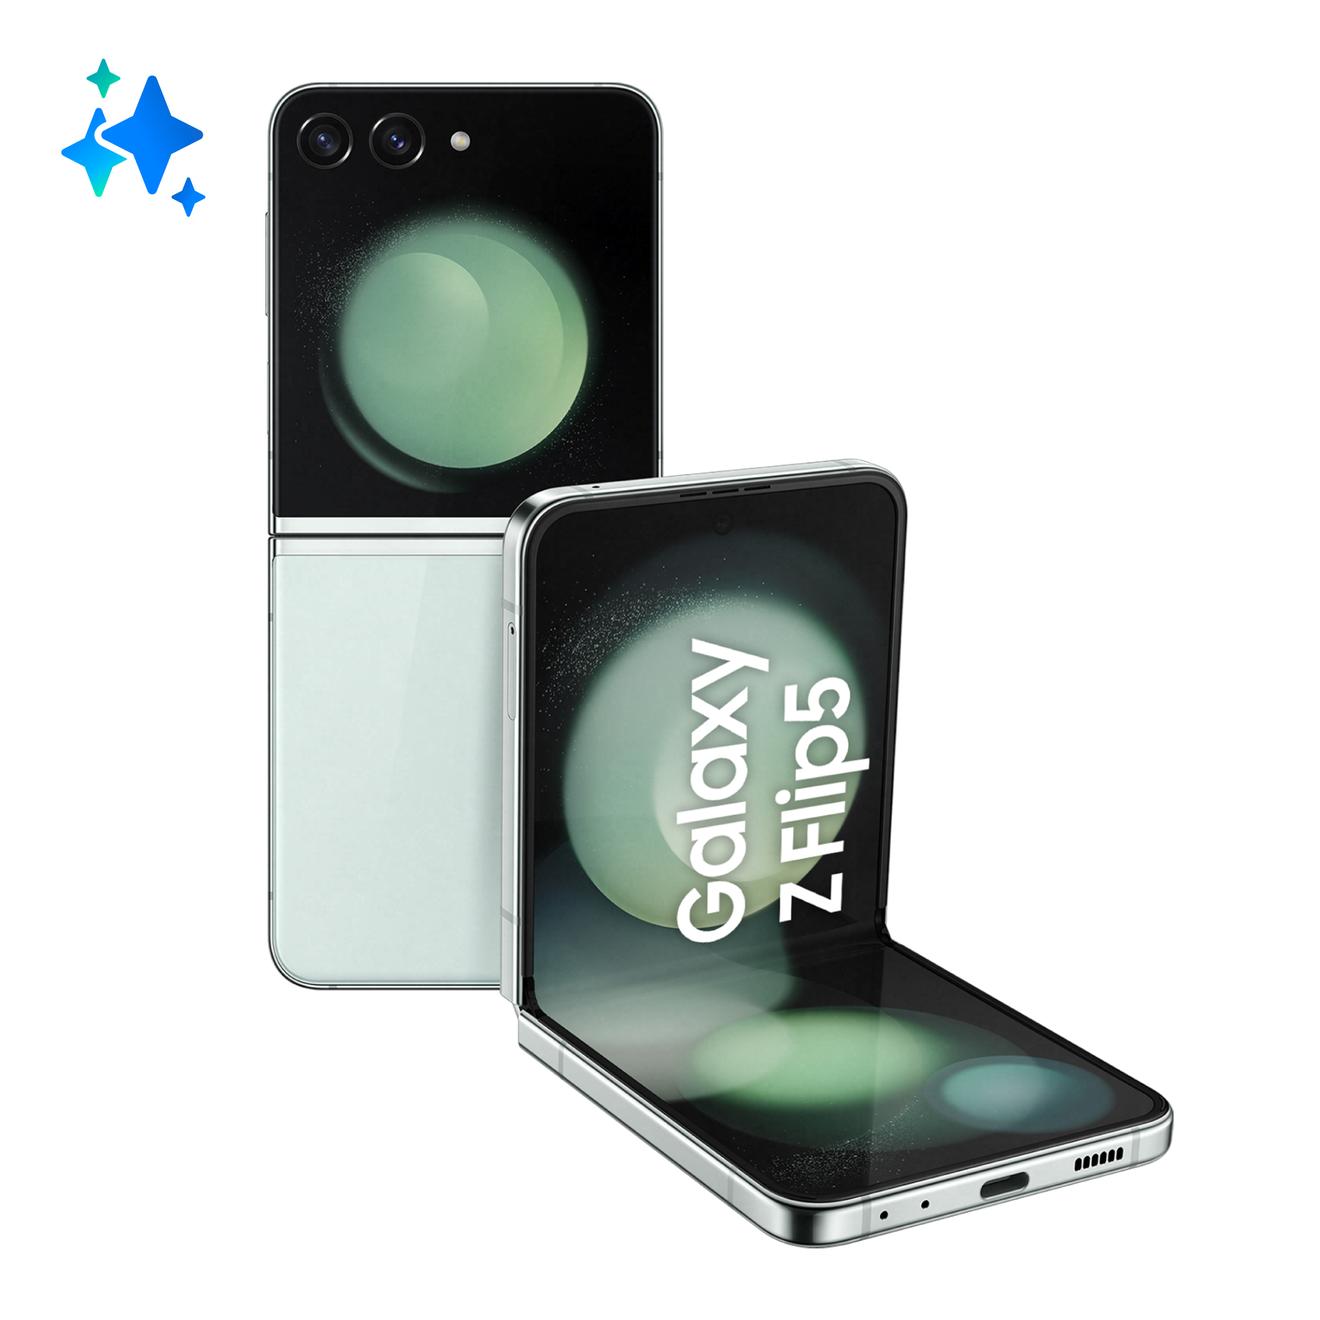 Offerta per Samsung - Galaxy Z Flip5 Smartphone AI RAM 8GB Display 3,4" Super AMOLED/6,7" Dynamic AMOLED 2X Mint 256GB a 1149€ in Comet